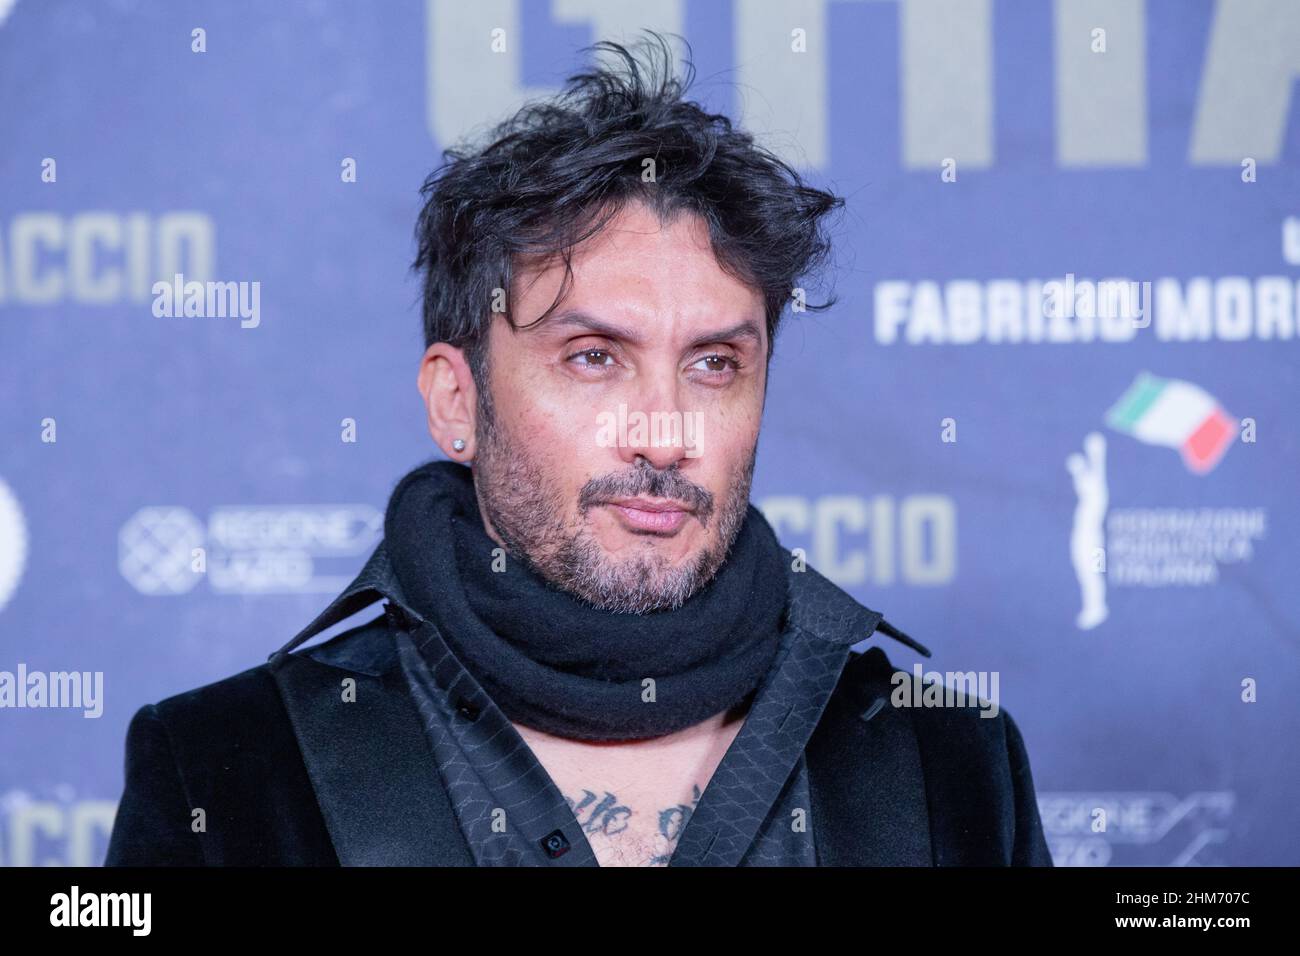 Italian singer Fabrizio Moro attends the premiere of film "Ghiaccio" at The  Space Cinema Moderno in Rome (Photo by Matteo Nardone / Pacific Press/Sipa  USA Stock Photo - Alamy